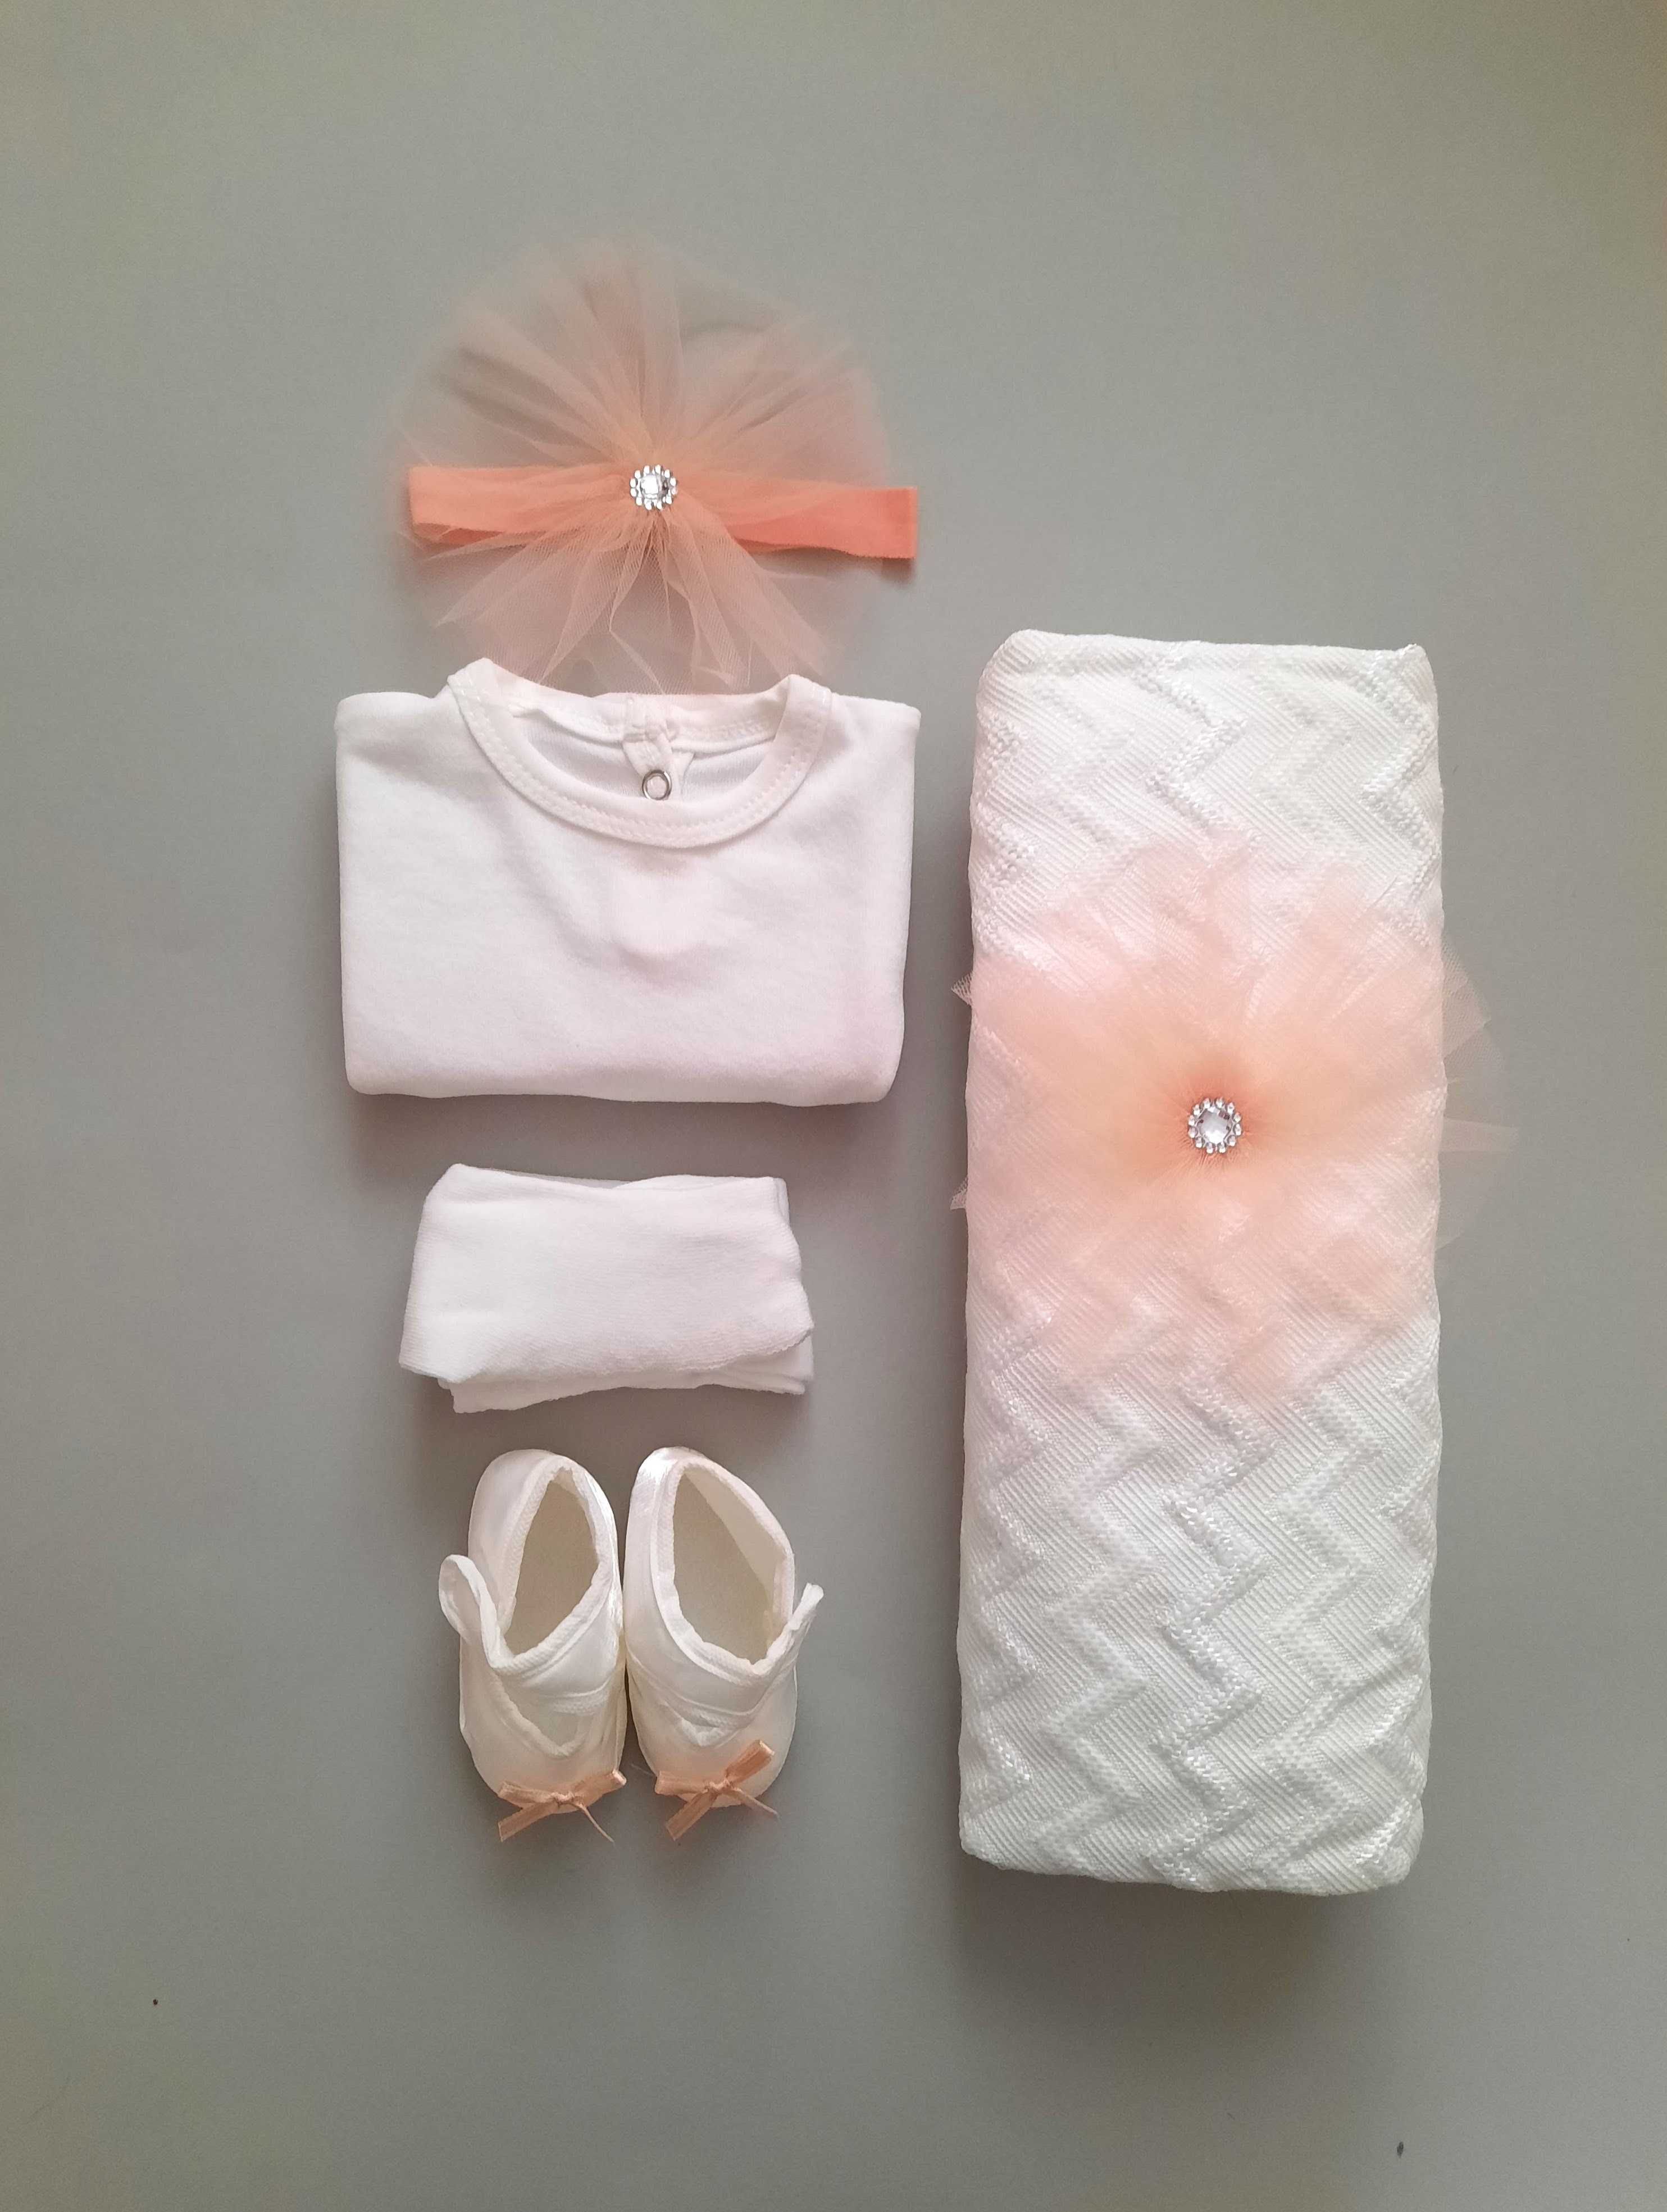 Комплект одягу для новонародженої дівчинки